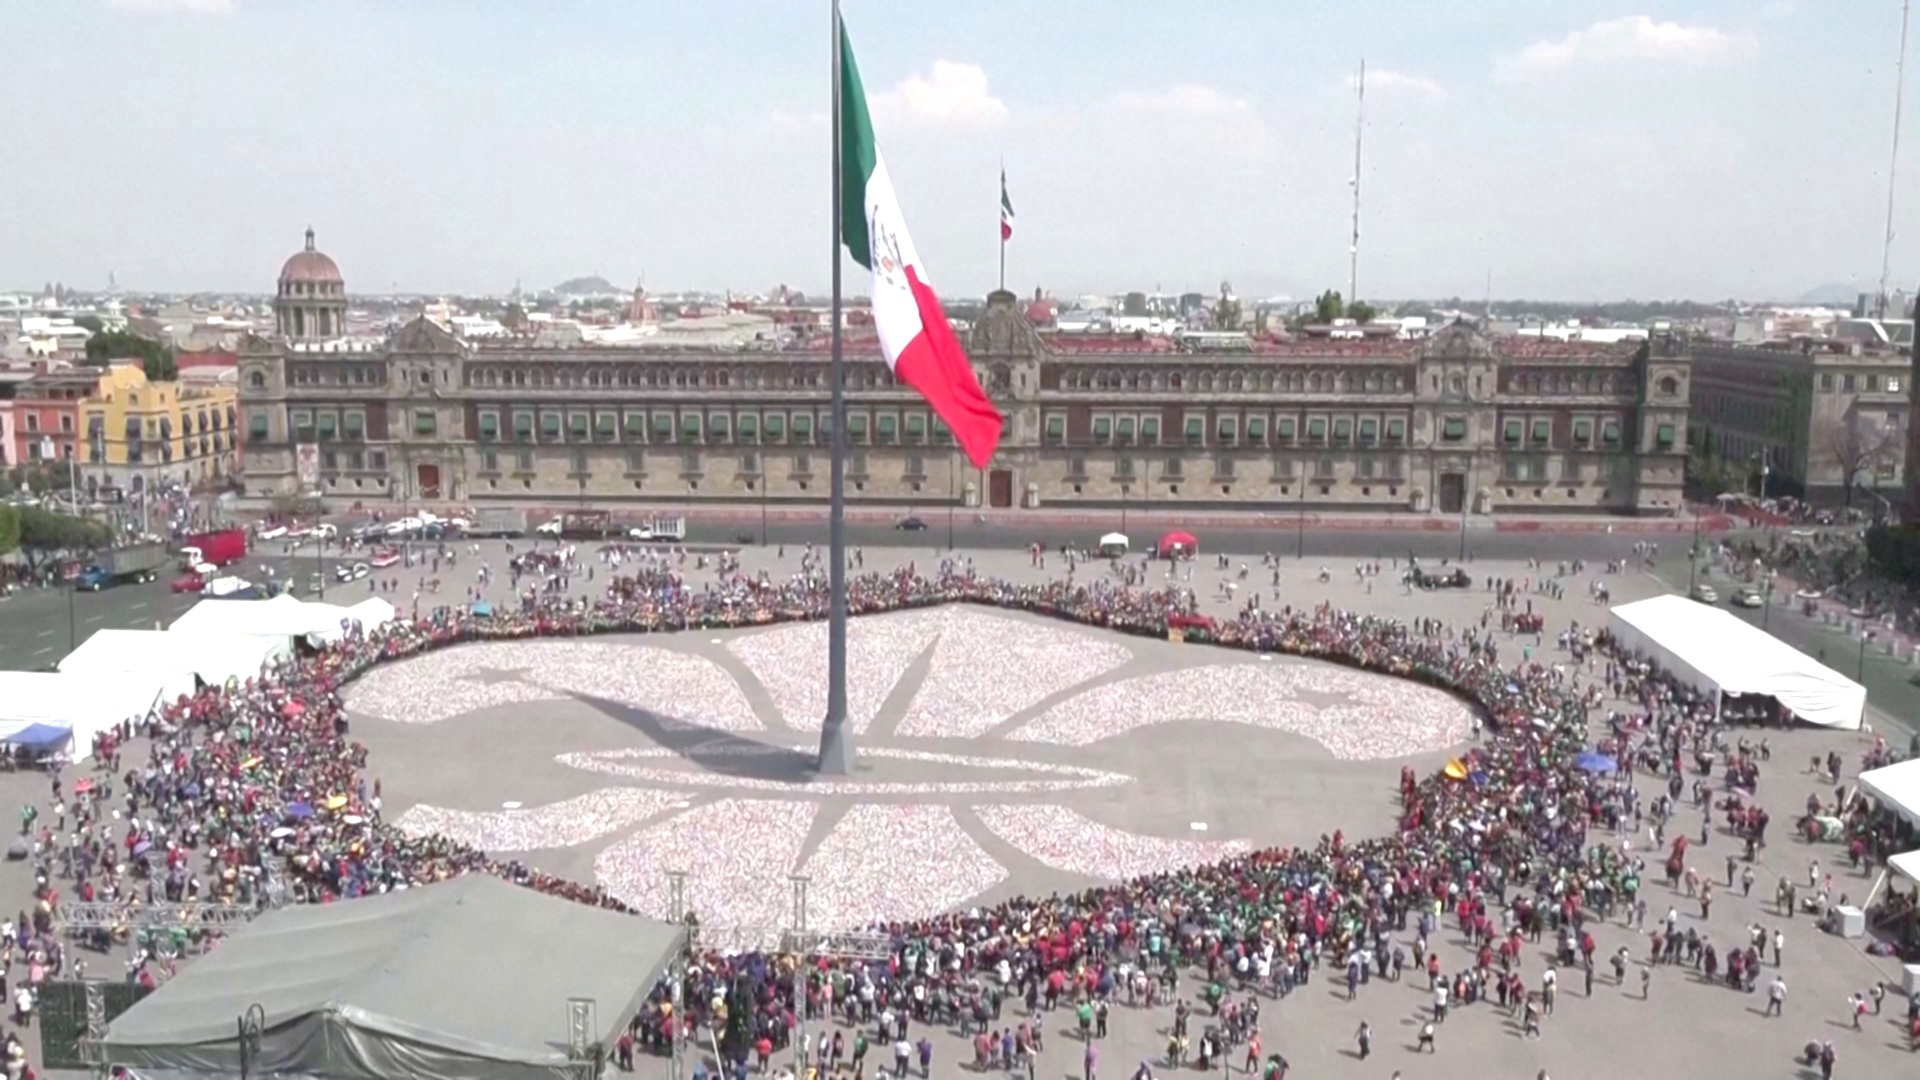 Гигантскую лилию из мусора сложили мексиканские скауты в центре Мехико